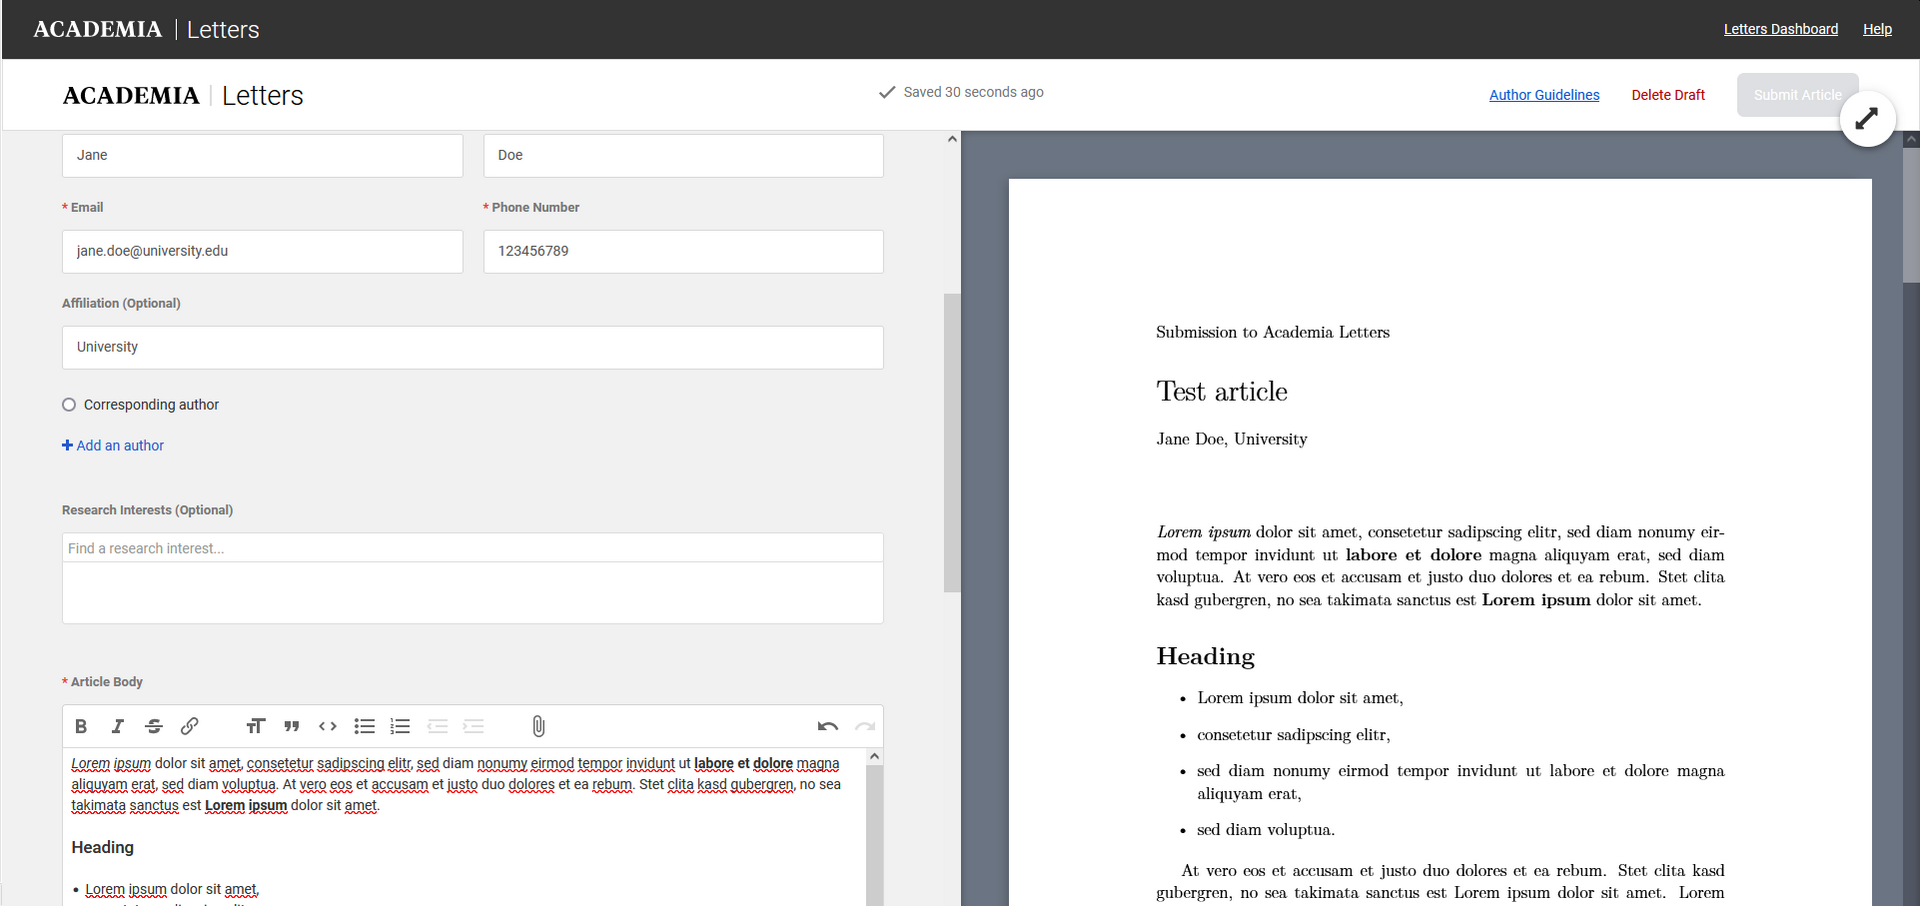 Abb. 2: Einreichungsmaske bei Academia Letters mit den Feldern zur Eingabe der Metadaten sowie des Textes auf der linken Seite und einer automatisch generierten Vorschau auf der rechten Seite.